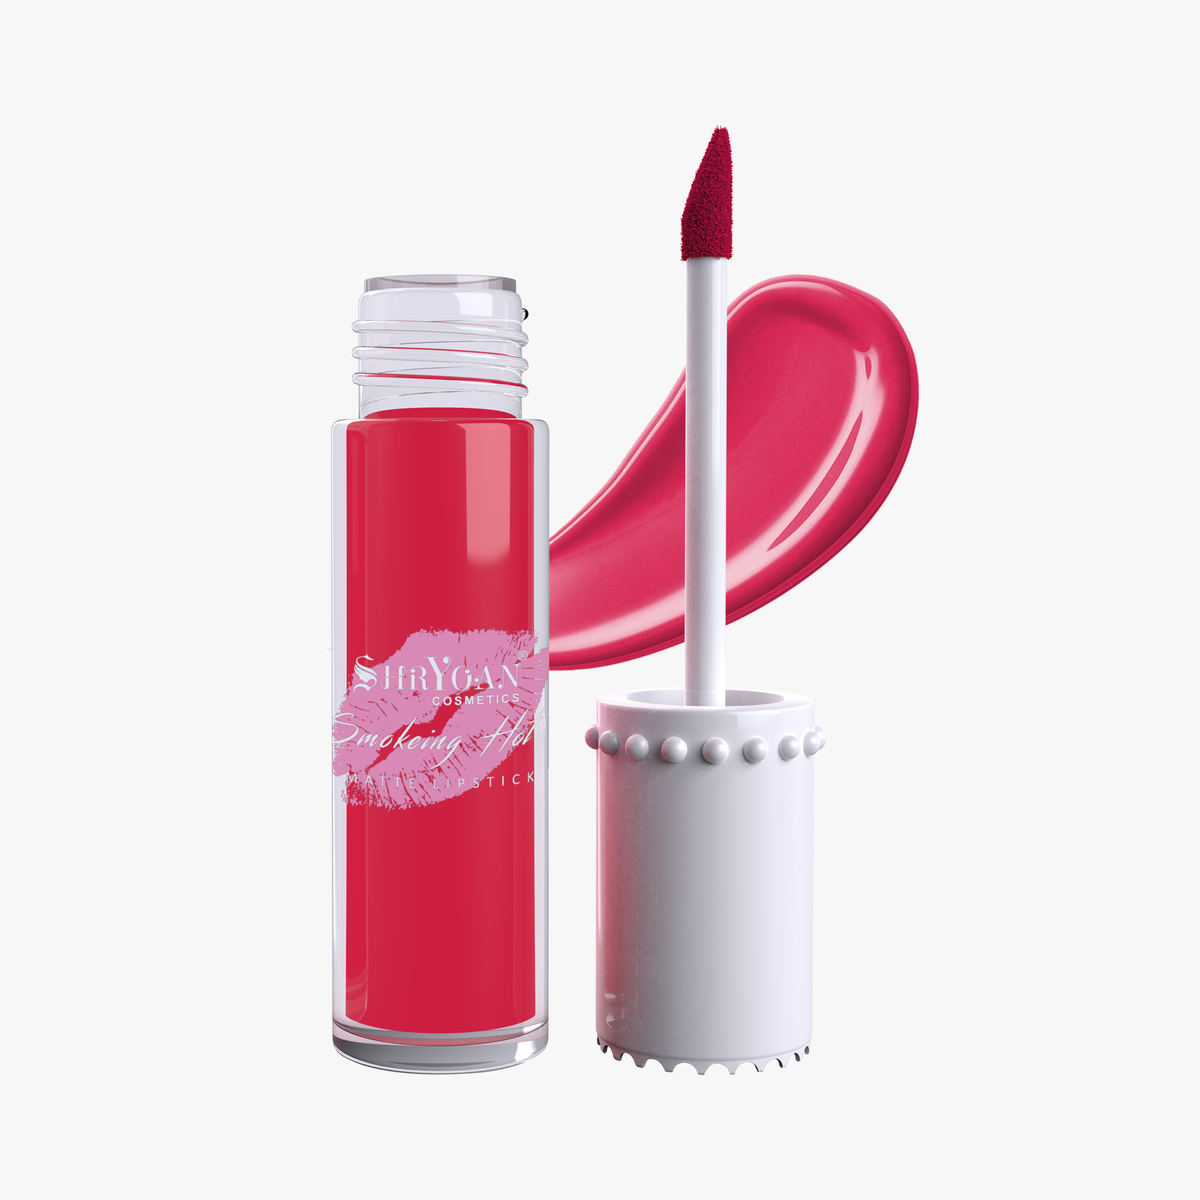 Shryoan Lippi Gift Matte Lip Gloss Pack Of 6 (A)